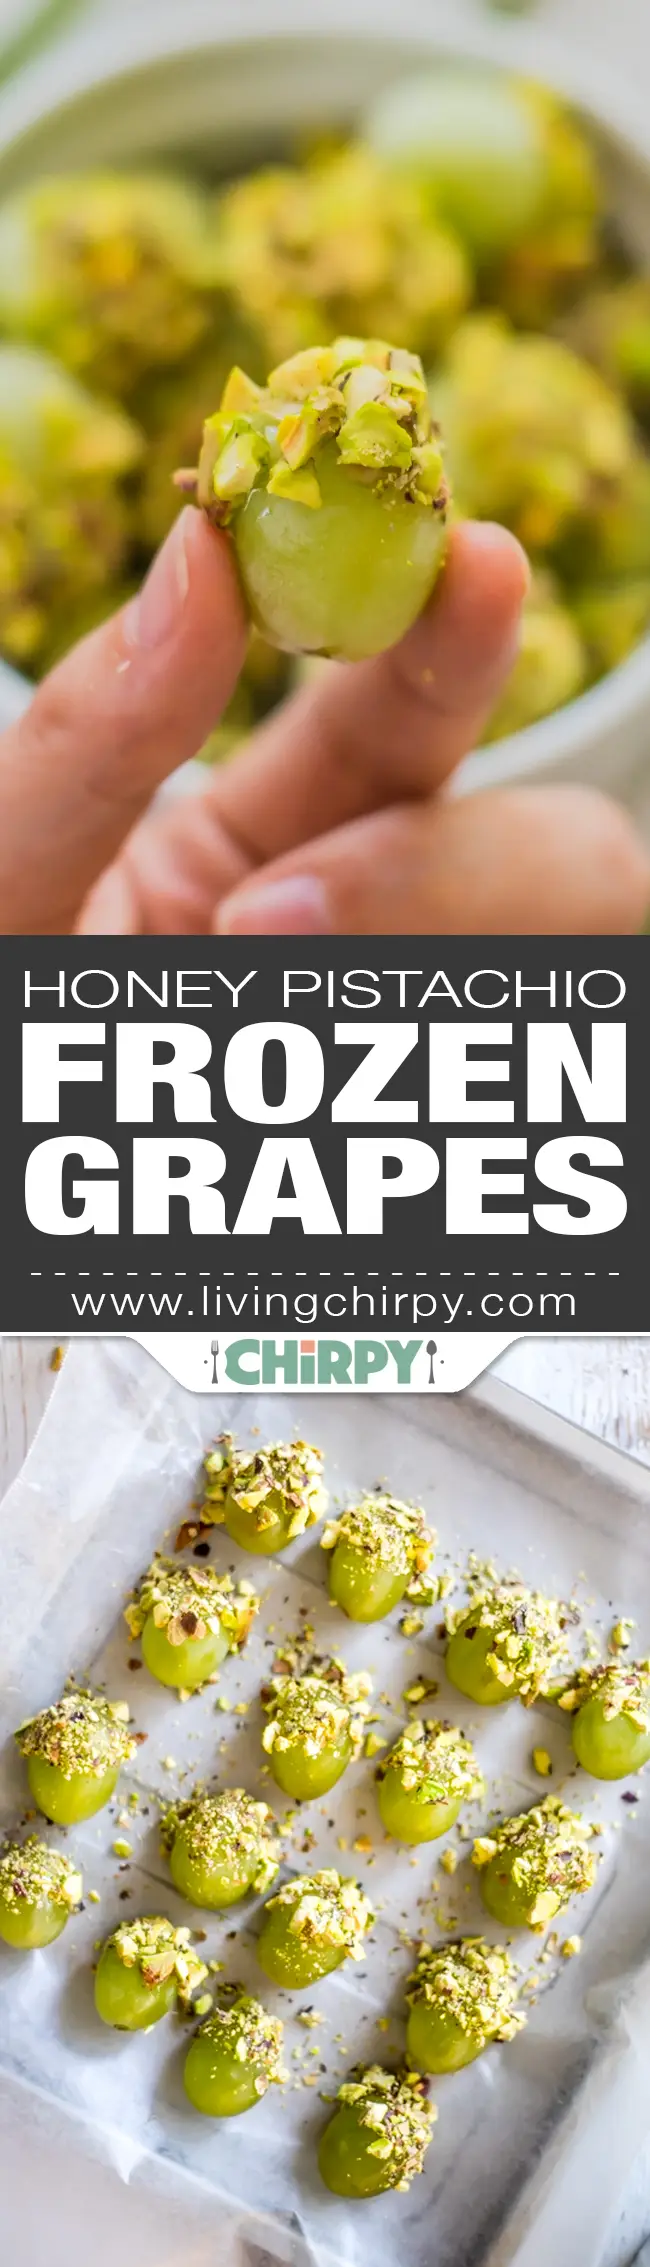 Honey Pistachio Frozen Grapes